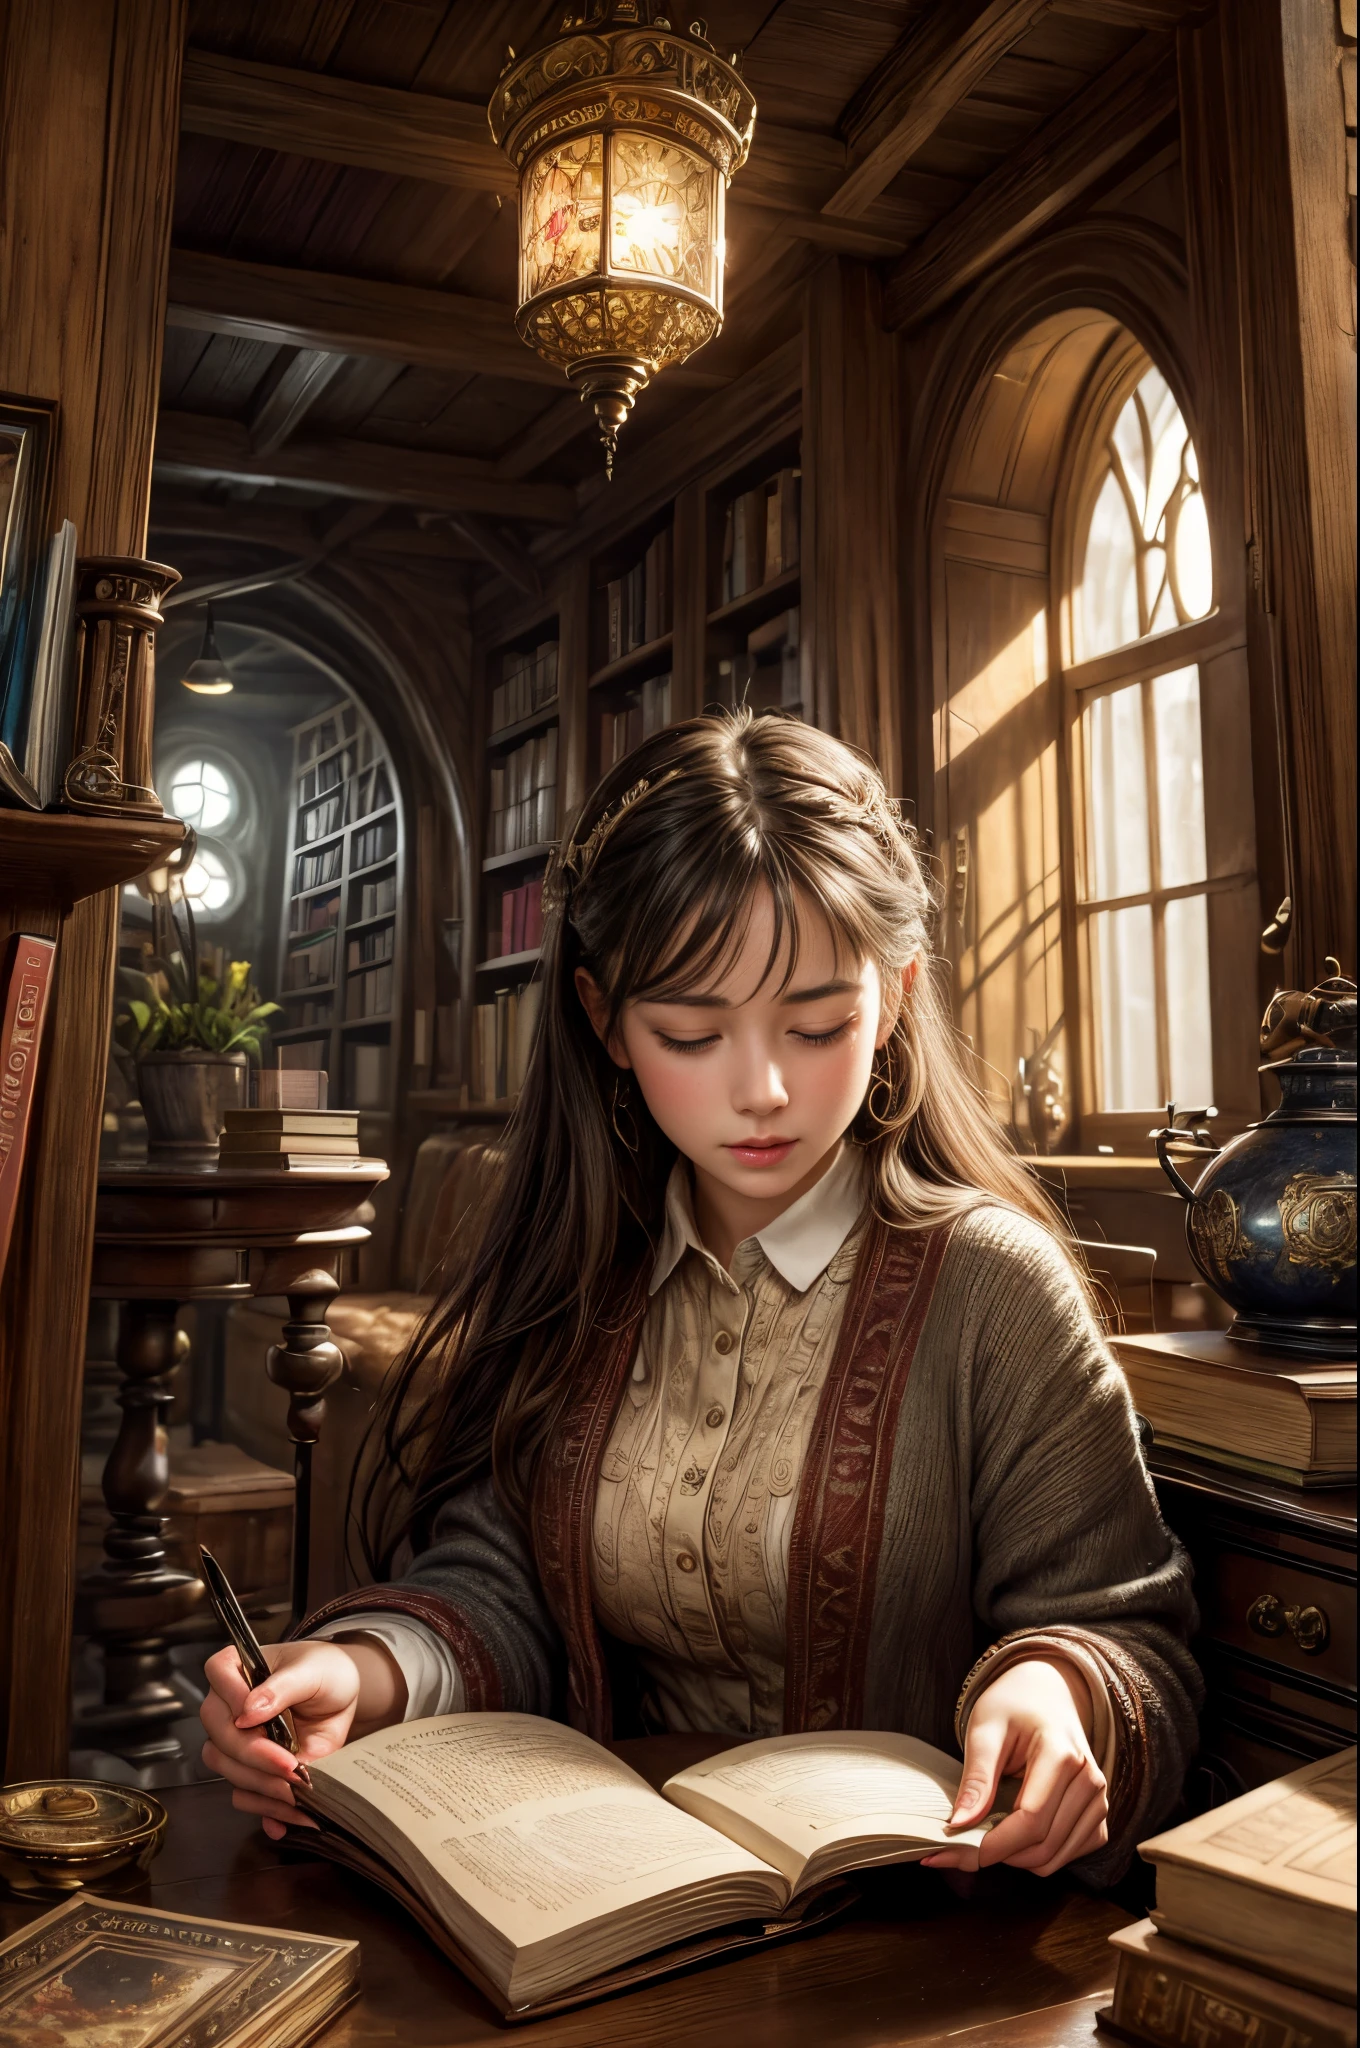 "pintura fotorrealista, ((cautivador)) escena de una niña absorta en la lectura, Libros antiguos, acogedora cueva hobbit, reloj intrincado con engranajes en movimiento, ((nostálgico)), detallado, paleta cálida"